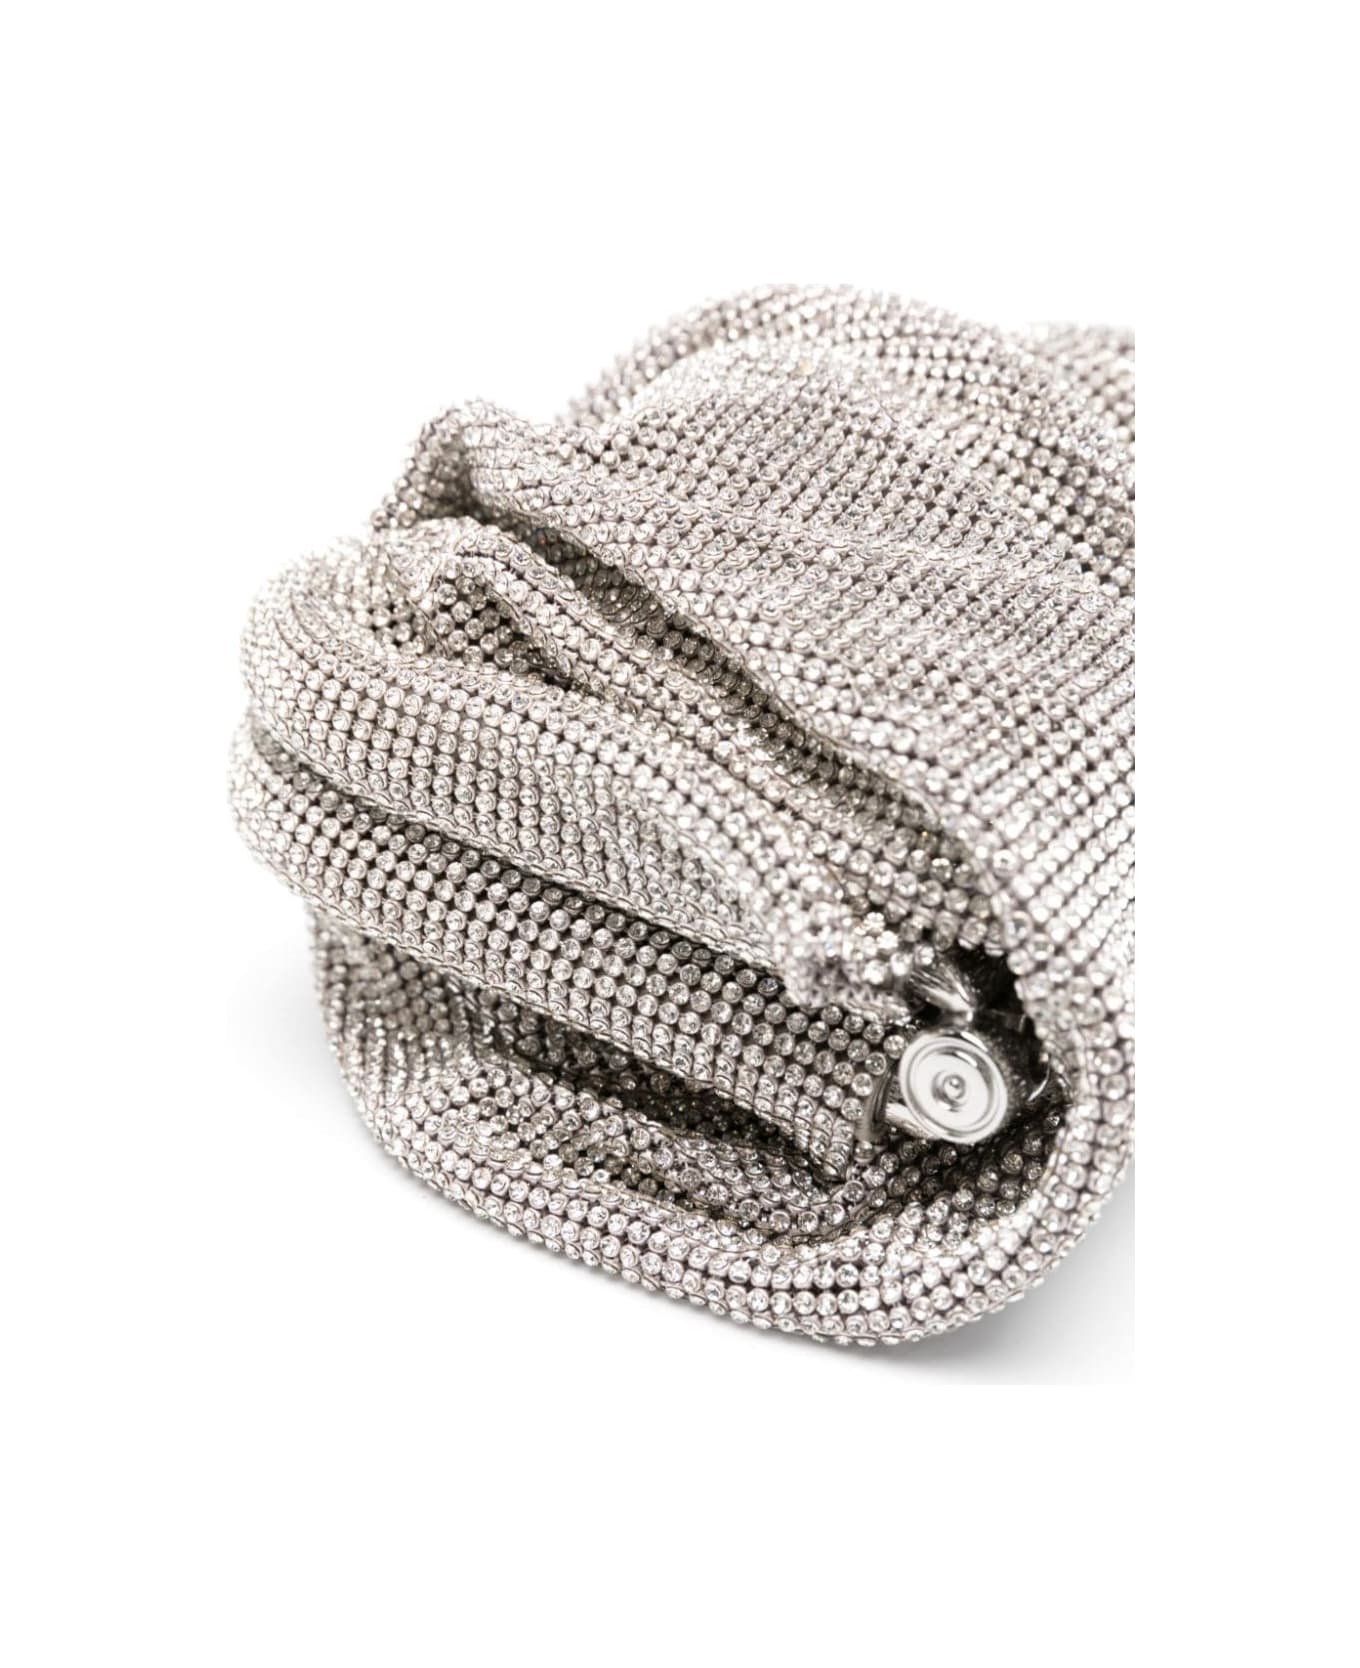 Benedetta Bruzziches 'venus La Petite' Silver Clutch Bag In Fabric With Allover Crystals Woman - Metallic